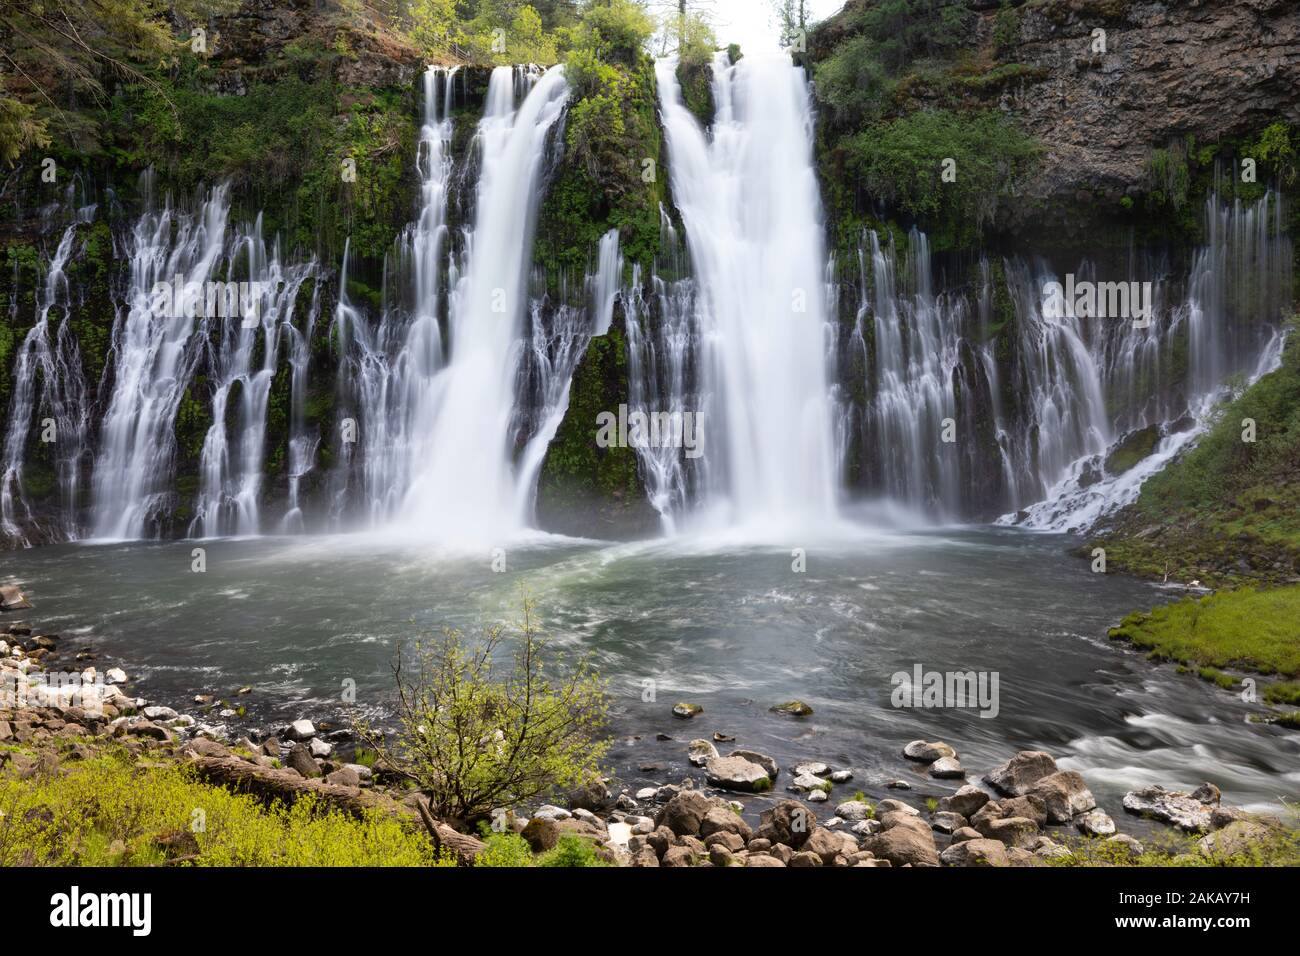 Voir des cascades, McArthur-Burney Falls Memorial State Park, Burney, California, USA Banque D'Images